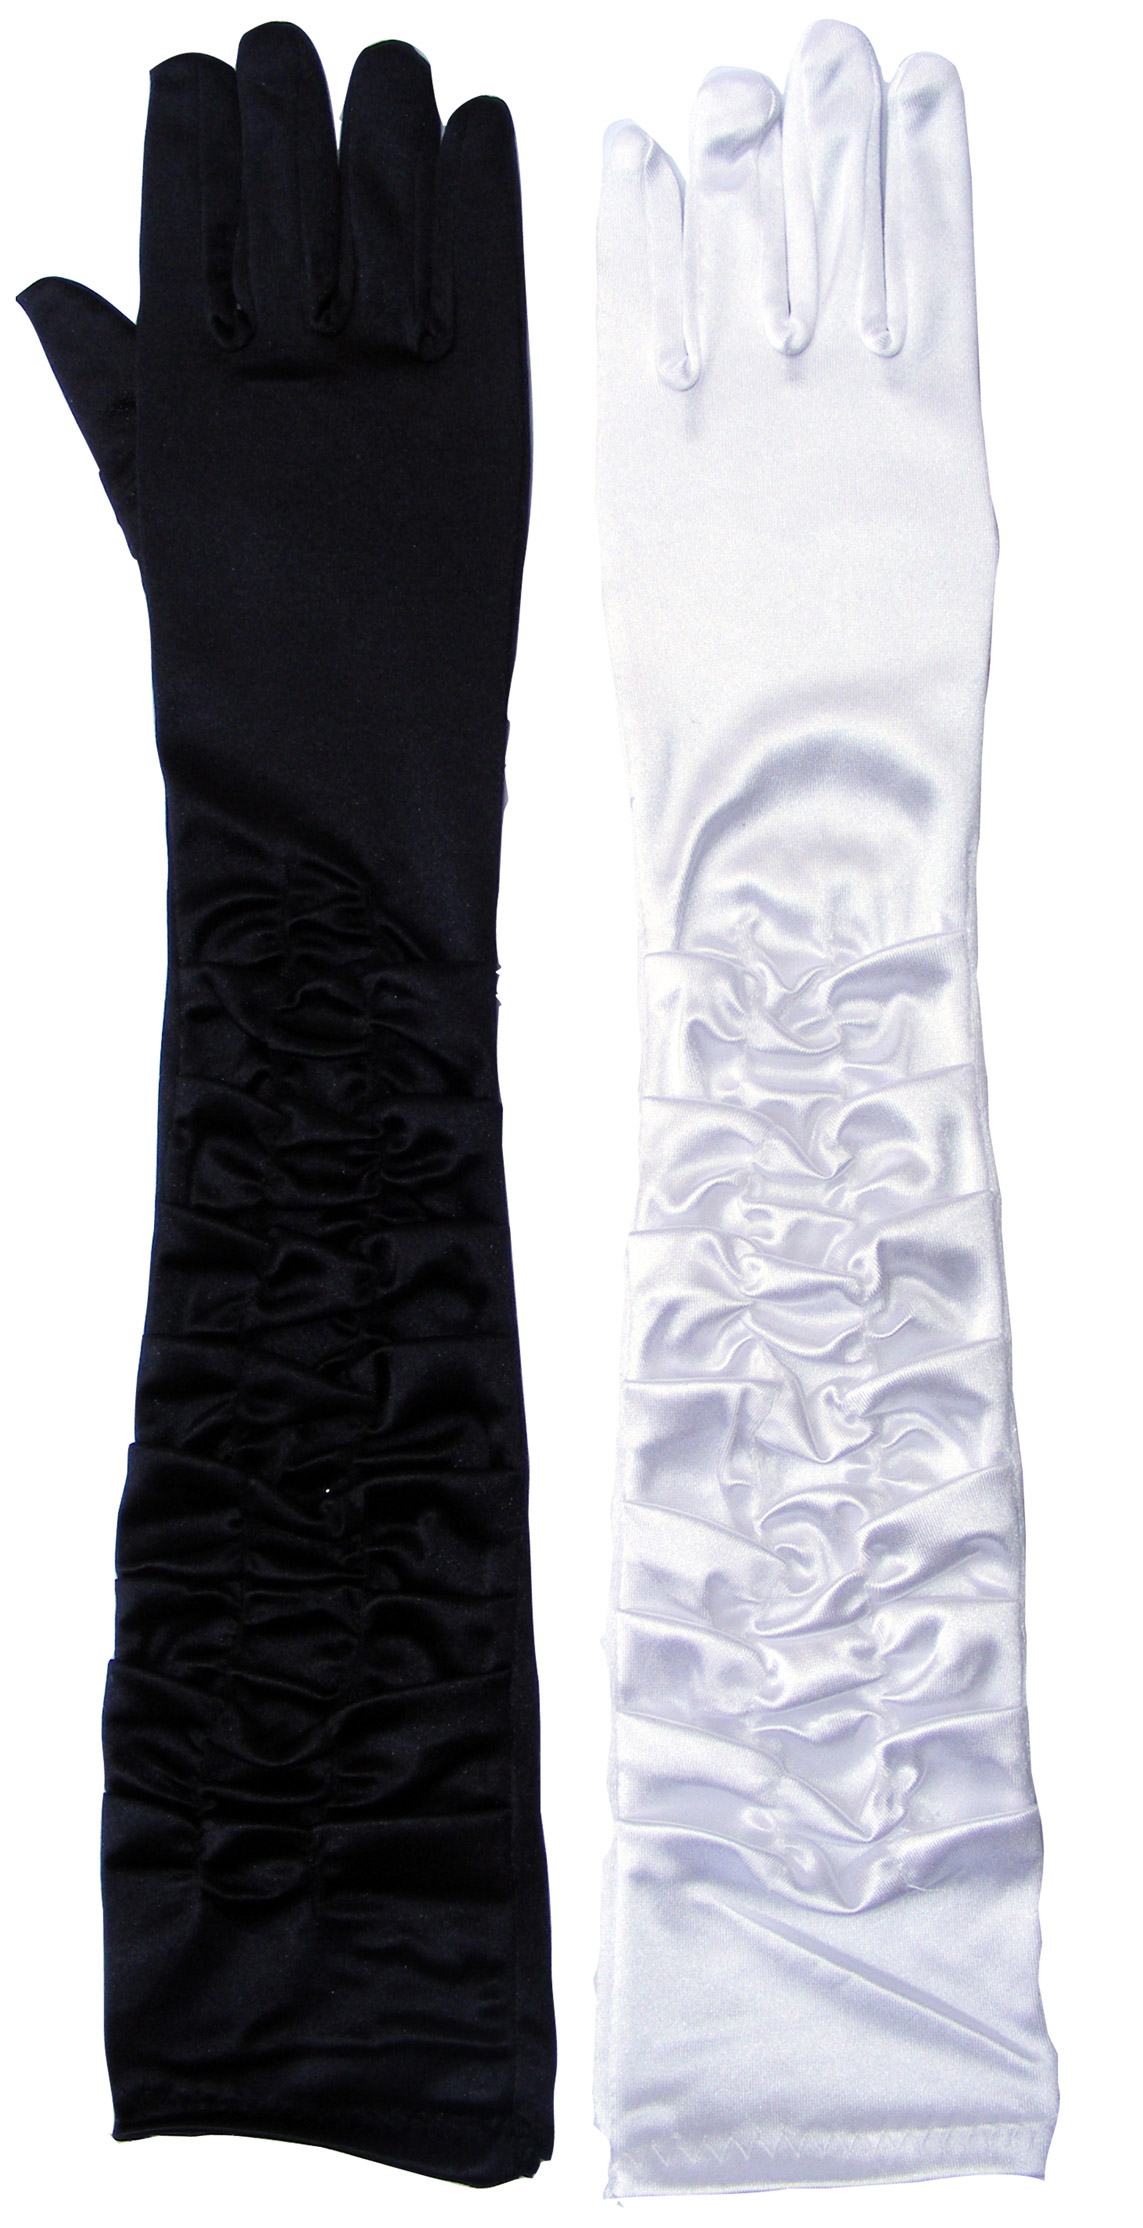 guantes drapeados tela raso 46 cm varios colores fy 2584.jpg